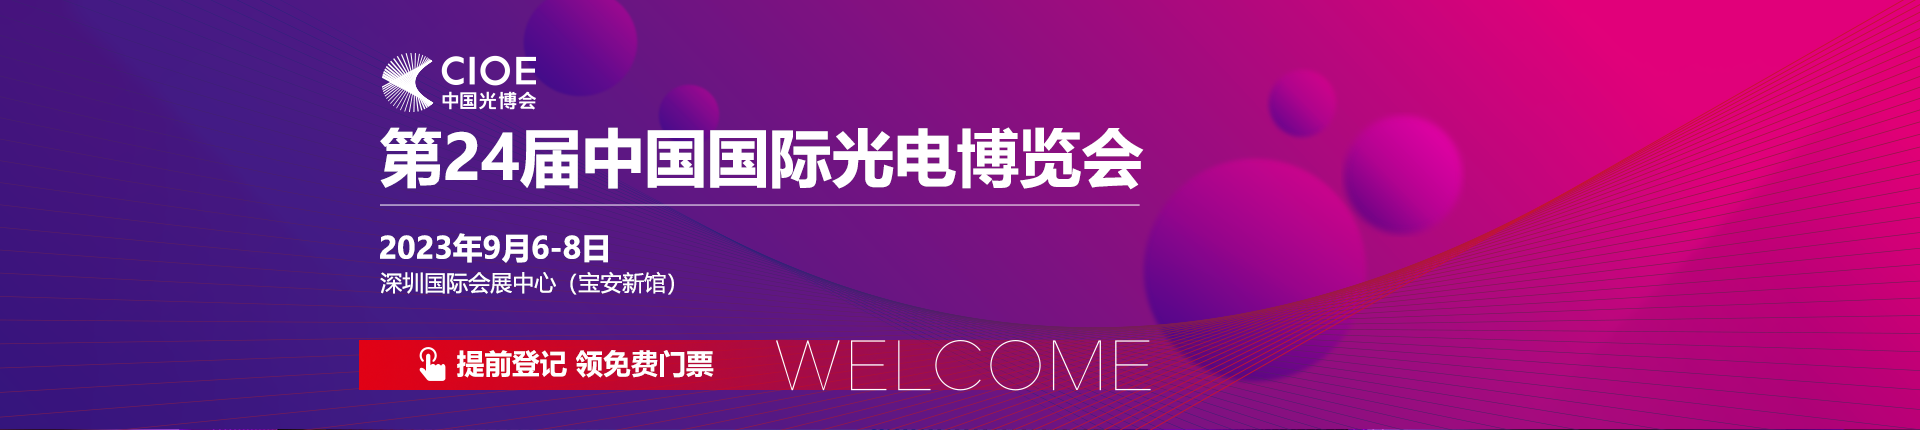 参展邀请|中为检验邀您参加第24届中国国际光电博览会